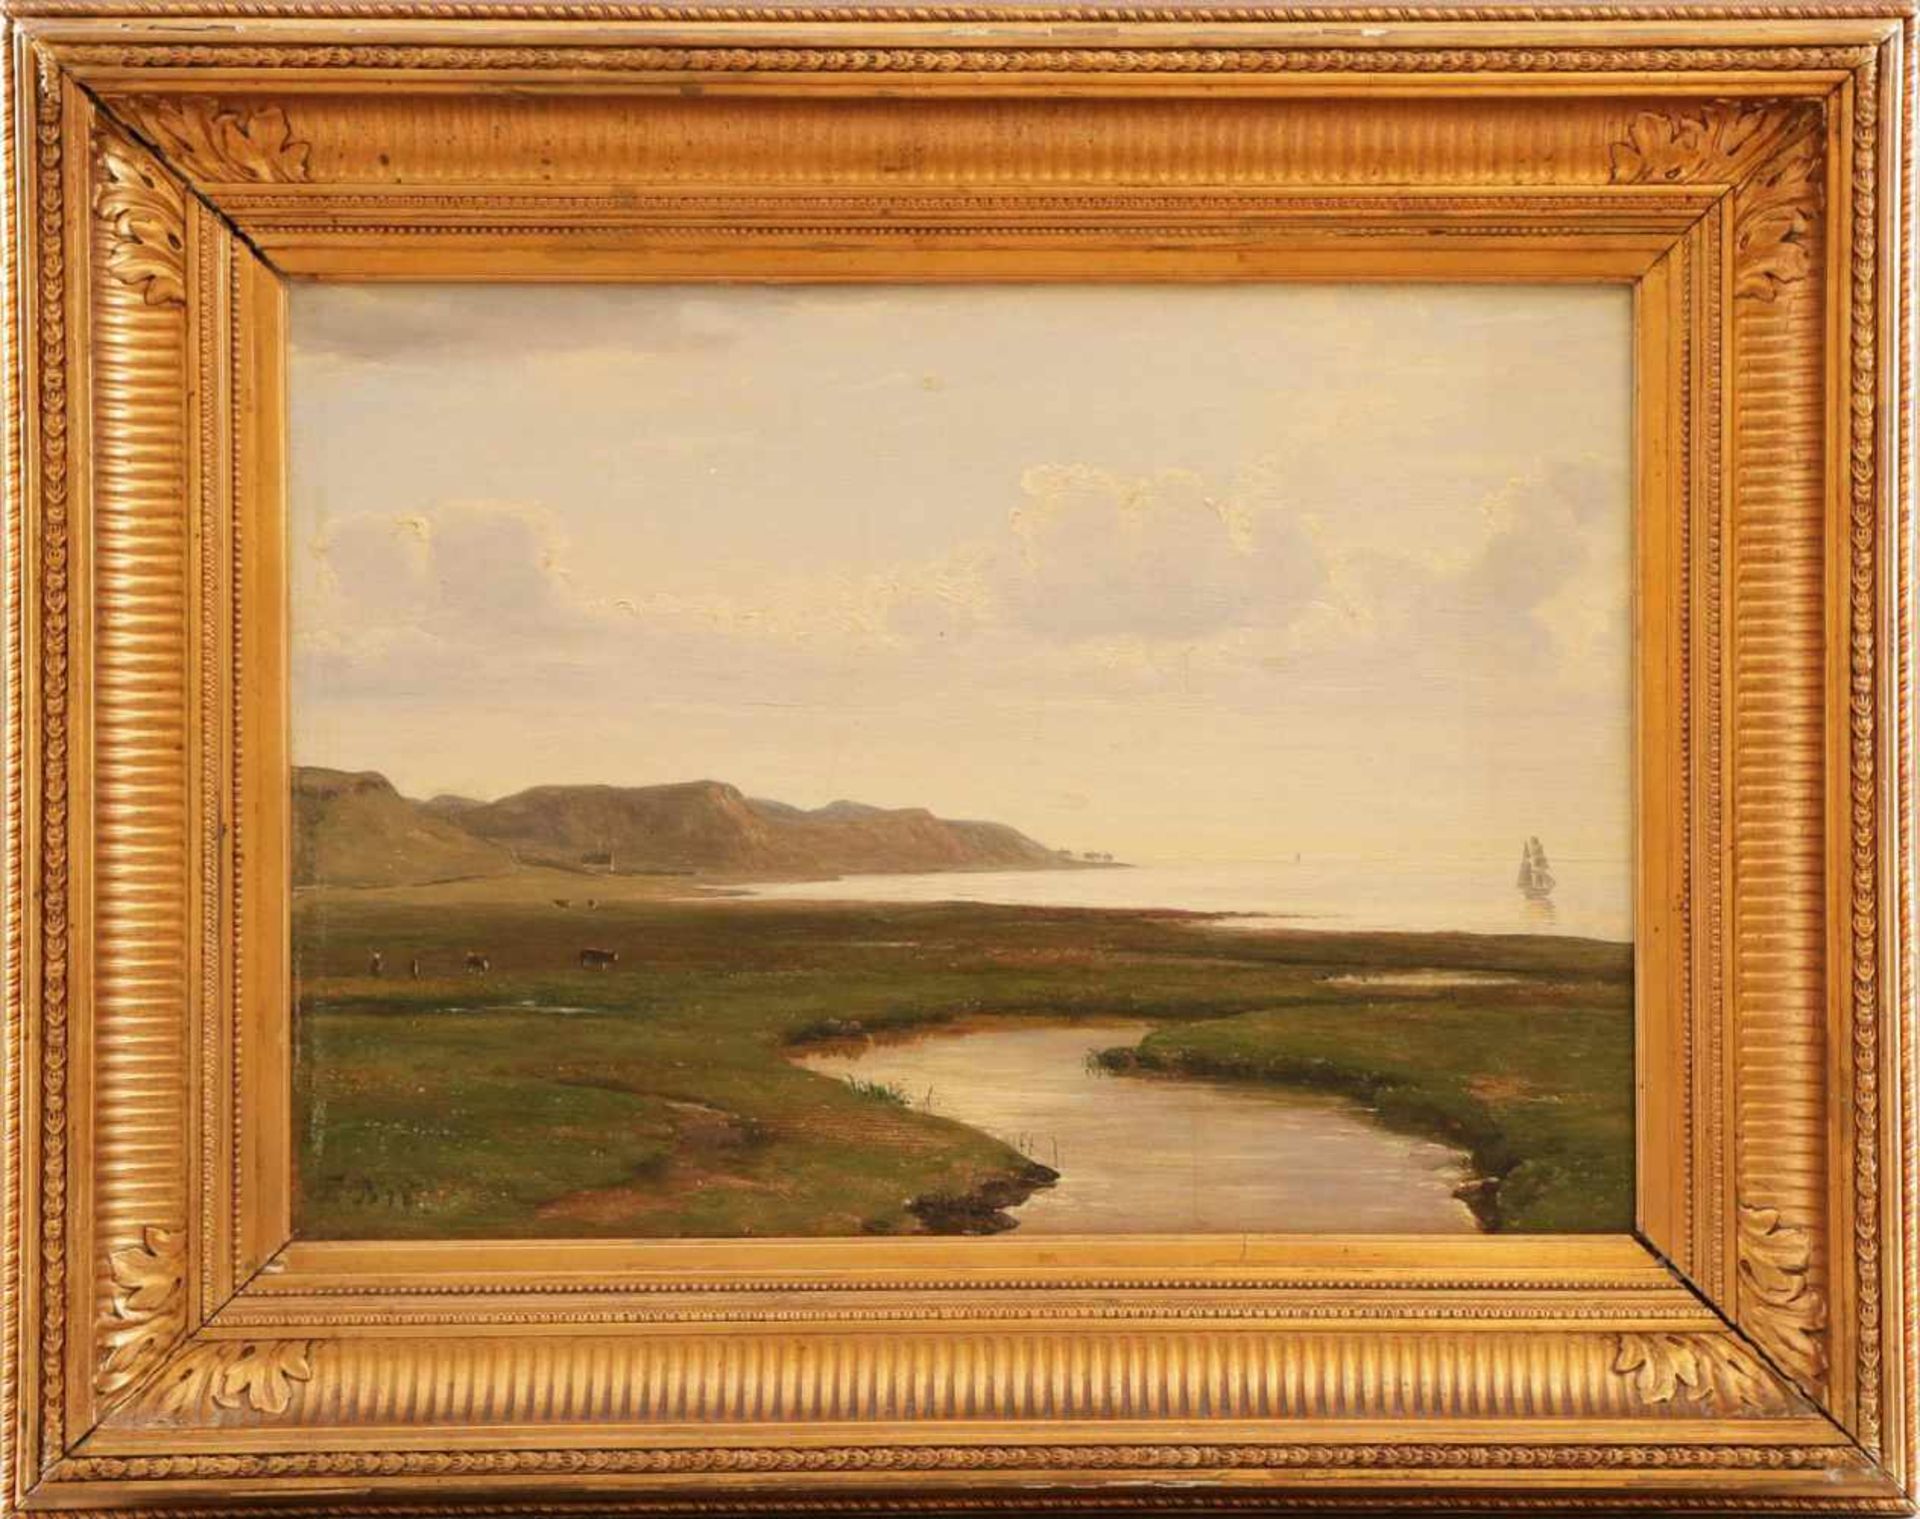 Wohl THORALD BRENDSTRUP (1812-1883)Öl auf Leindwand, ¨Nordische Küstenlandschaft mit Viehhirten,